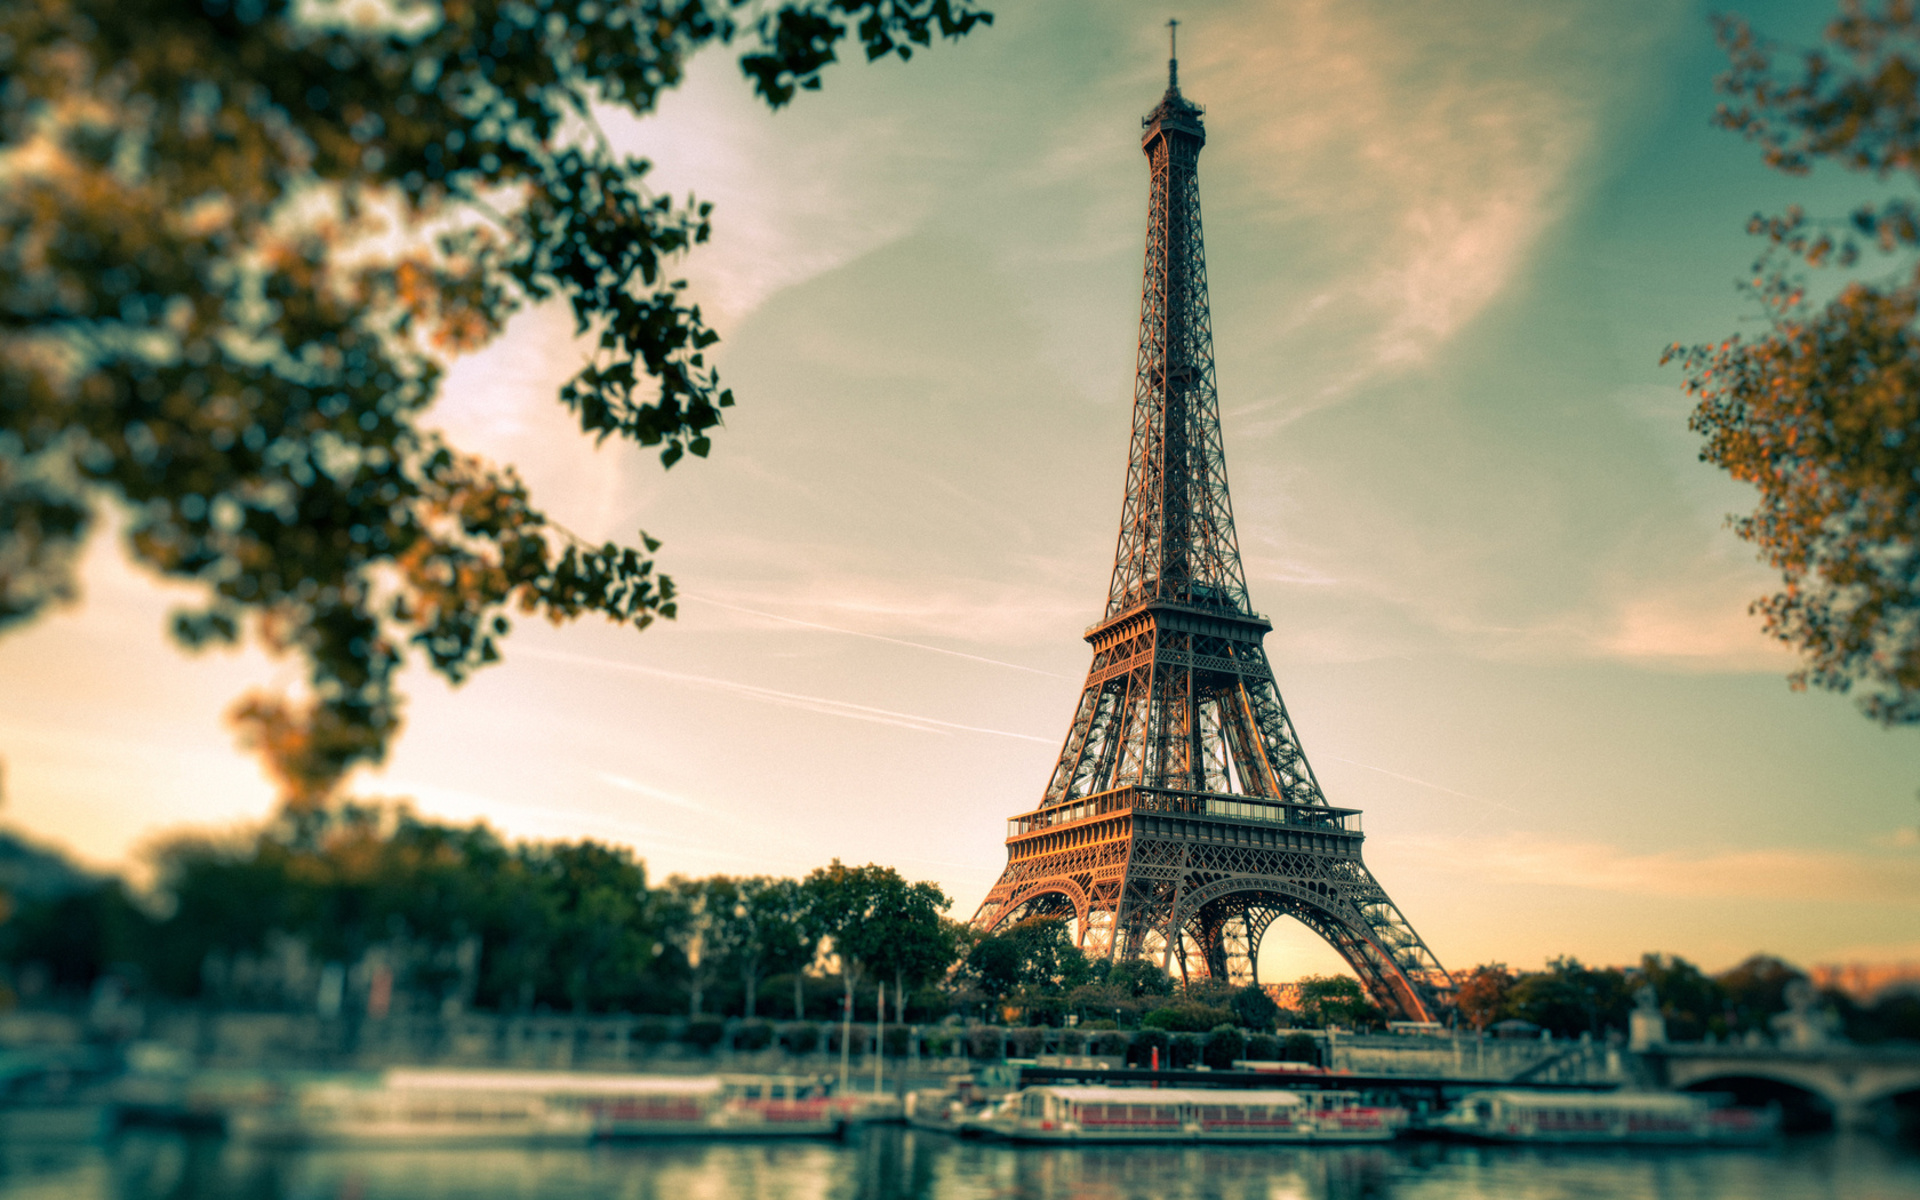 Mobile HD Wallpaper Eiffel Tower 